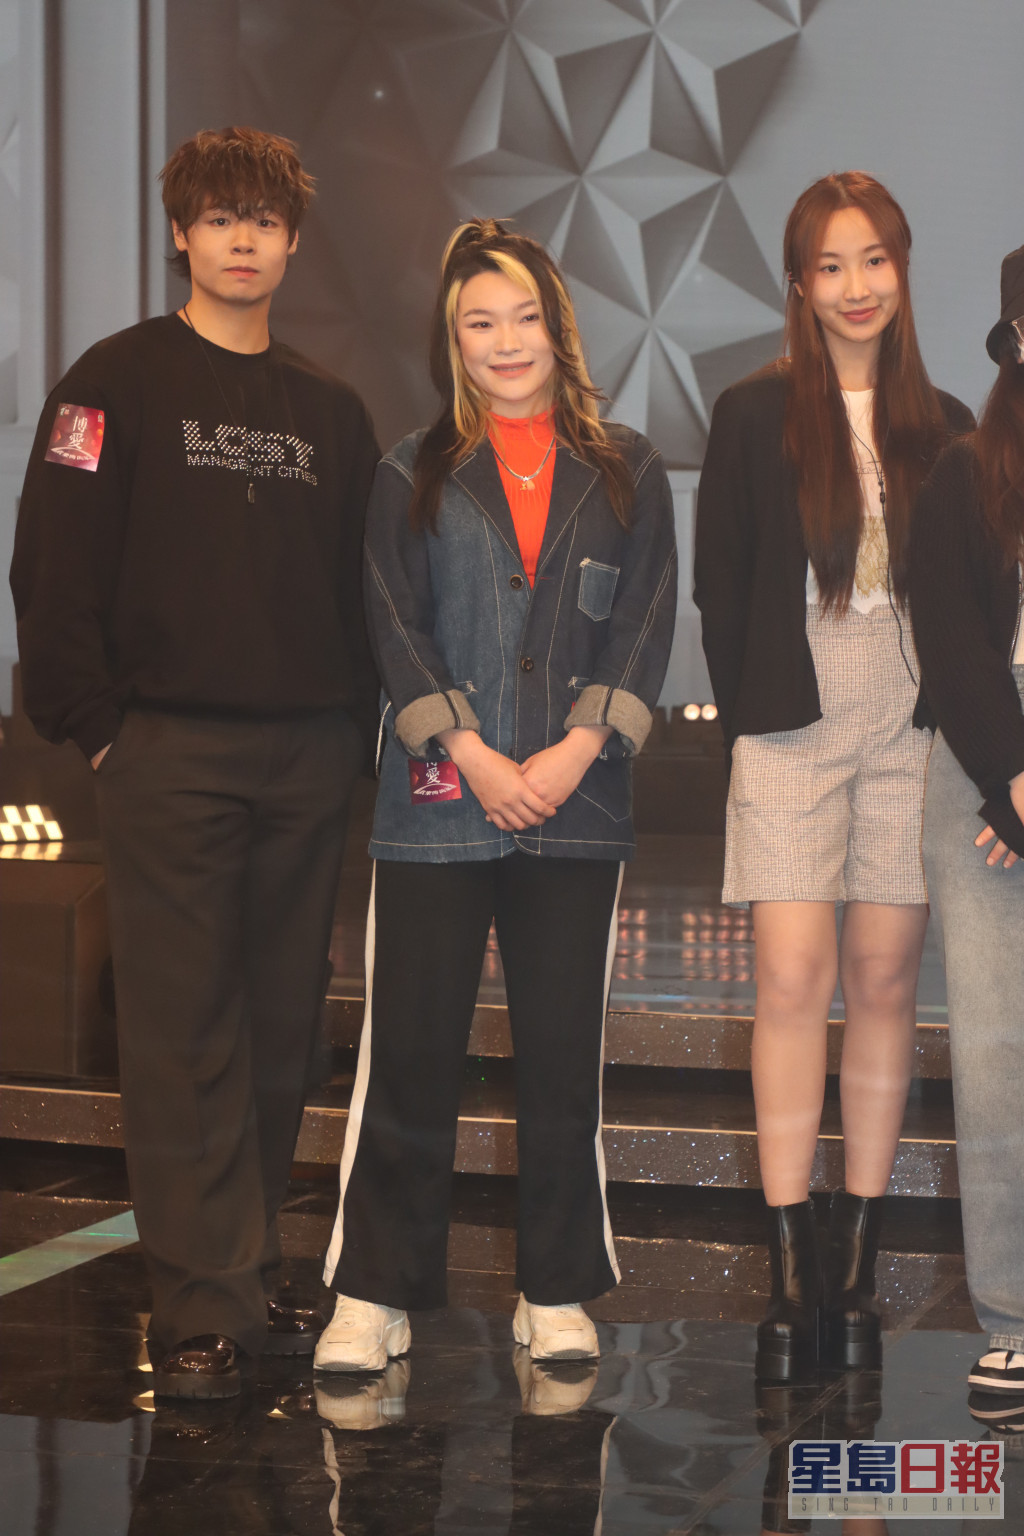 冼靖峰、黄洛妍及詹天文一同出席活动。